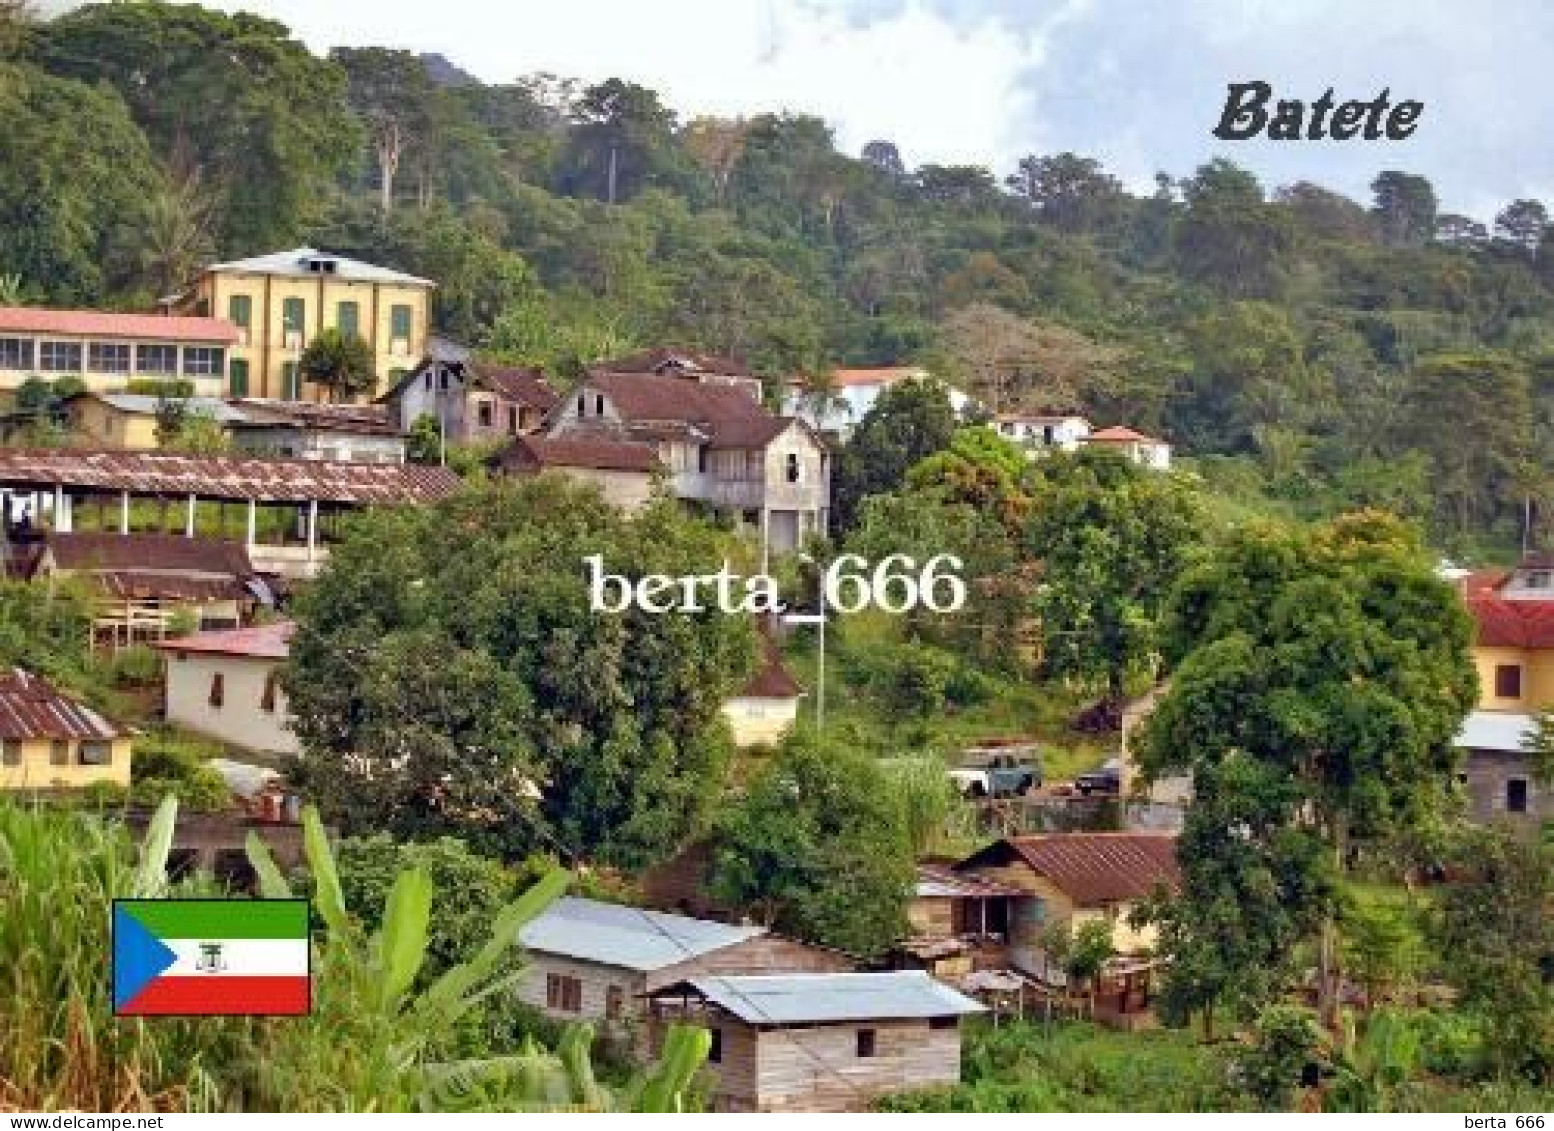 Equatorial Guinea Batete New Postcard - Equatoriaal Guinea